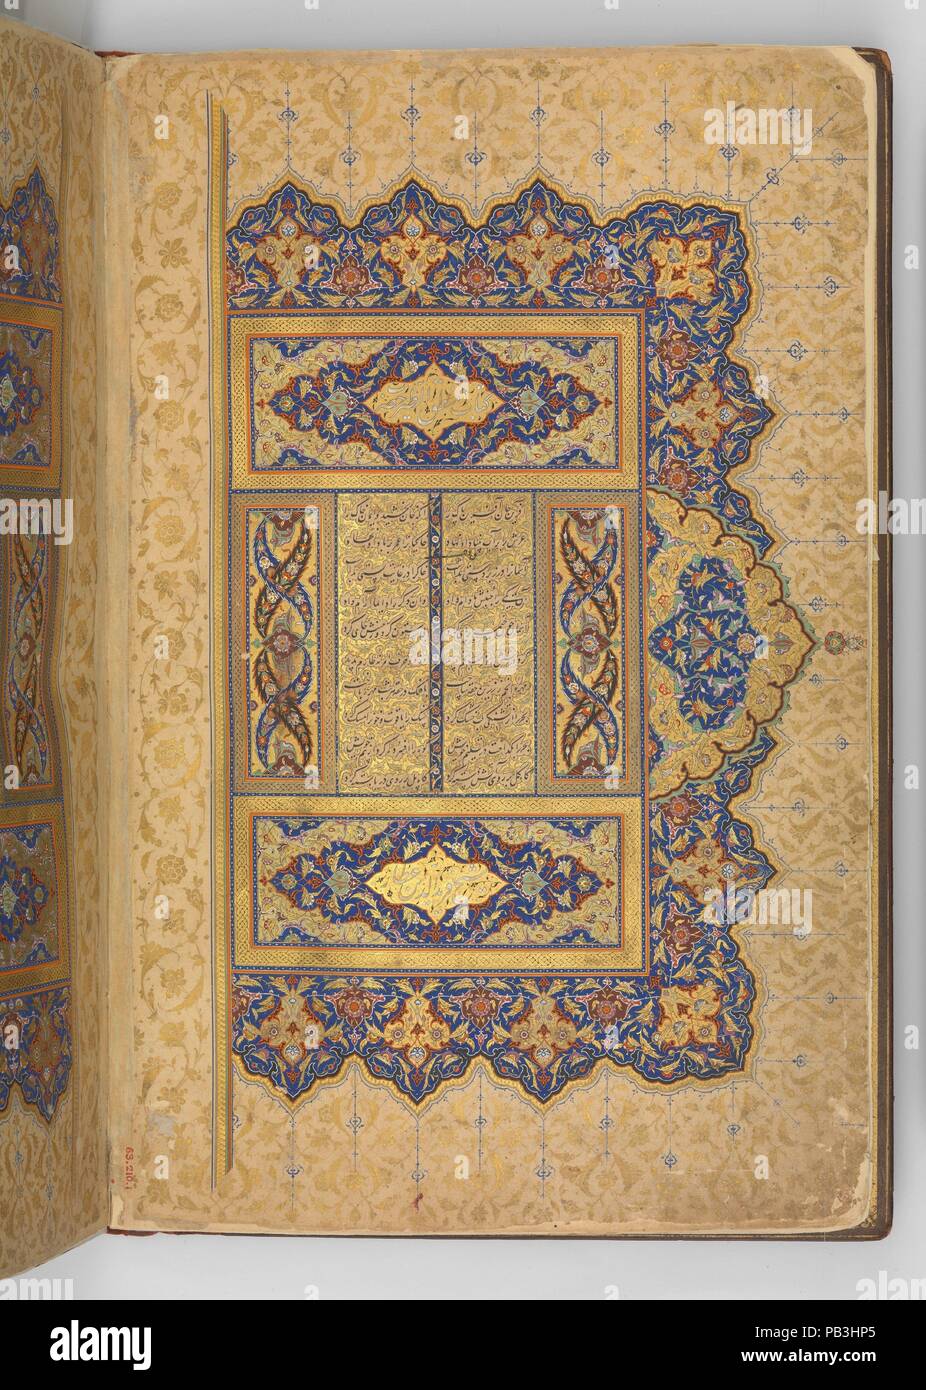 Frontipiece illuminato di un manoscritto del Mantiq al-tair (lingua degli uccelli). Autore: Farid al-Din 'Attar (ca. 1142-1220). Calligrapher: Sultan 'Ali al-Mashhadi (attivo fine del XV e gli inizi del XVI secolo). Dimensioni: 7,75 in. alta 4,50 in. ampia (19,7 cm di altezza 11,4 cm di larghezza). Illuminatore: Zain al-Abidin al-Tabrizi. Data: testo: datato A.H. 892/ A.D. 1487; illuminazione: ca. 1600. Qui possiamo vedere il blocco di testo del Mantiq al-Tair, insieme con la sua elegante vincolante. Mentre il colophon del testo principale è datata 1487, il manoscritto fu completata dopo la sua entrata in possesso della regola di Safavid Foto Stock